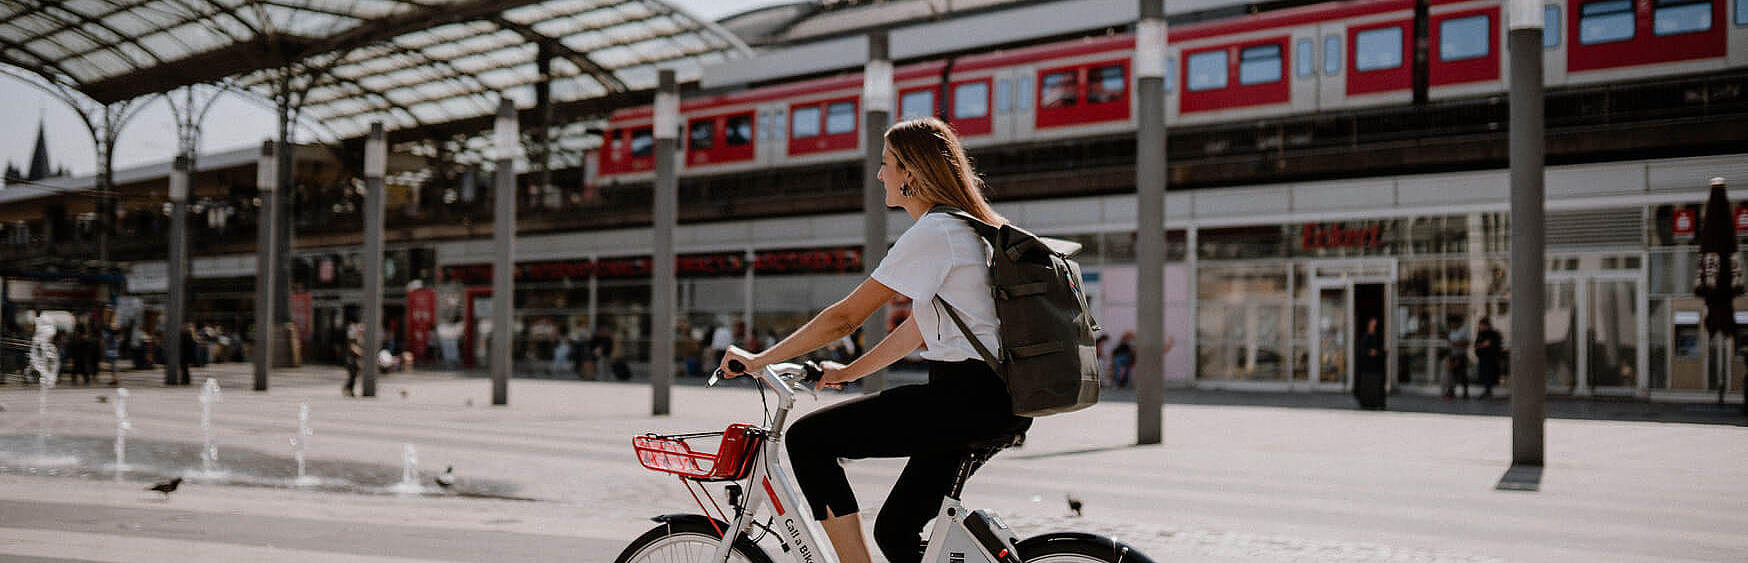 Eine Frau auf einem Mietrad fährt an einem Bahnhof vorbei. Im Hintergrund sieht man einen roten Zug auf einer Eisenbahnbrücke.